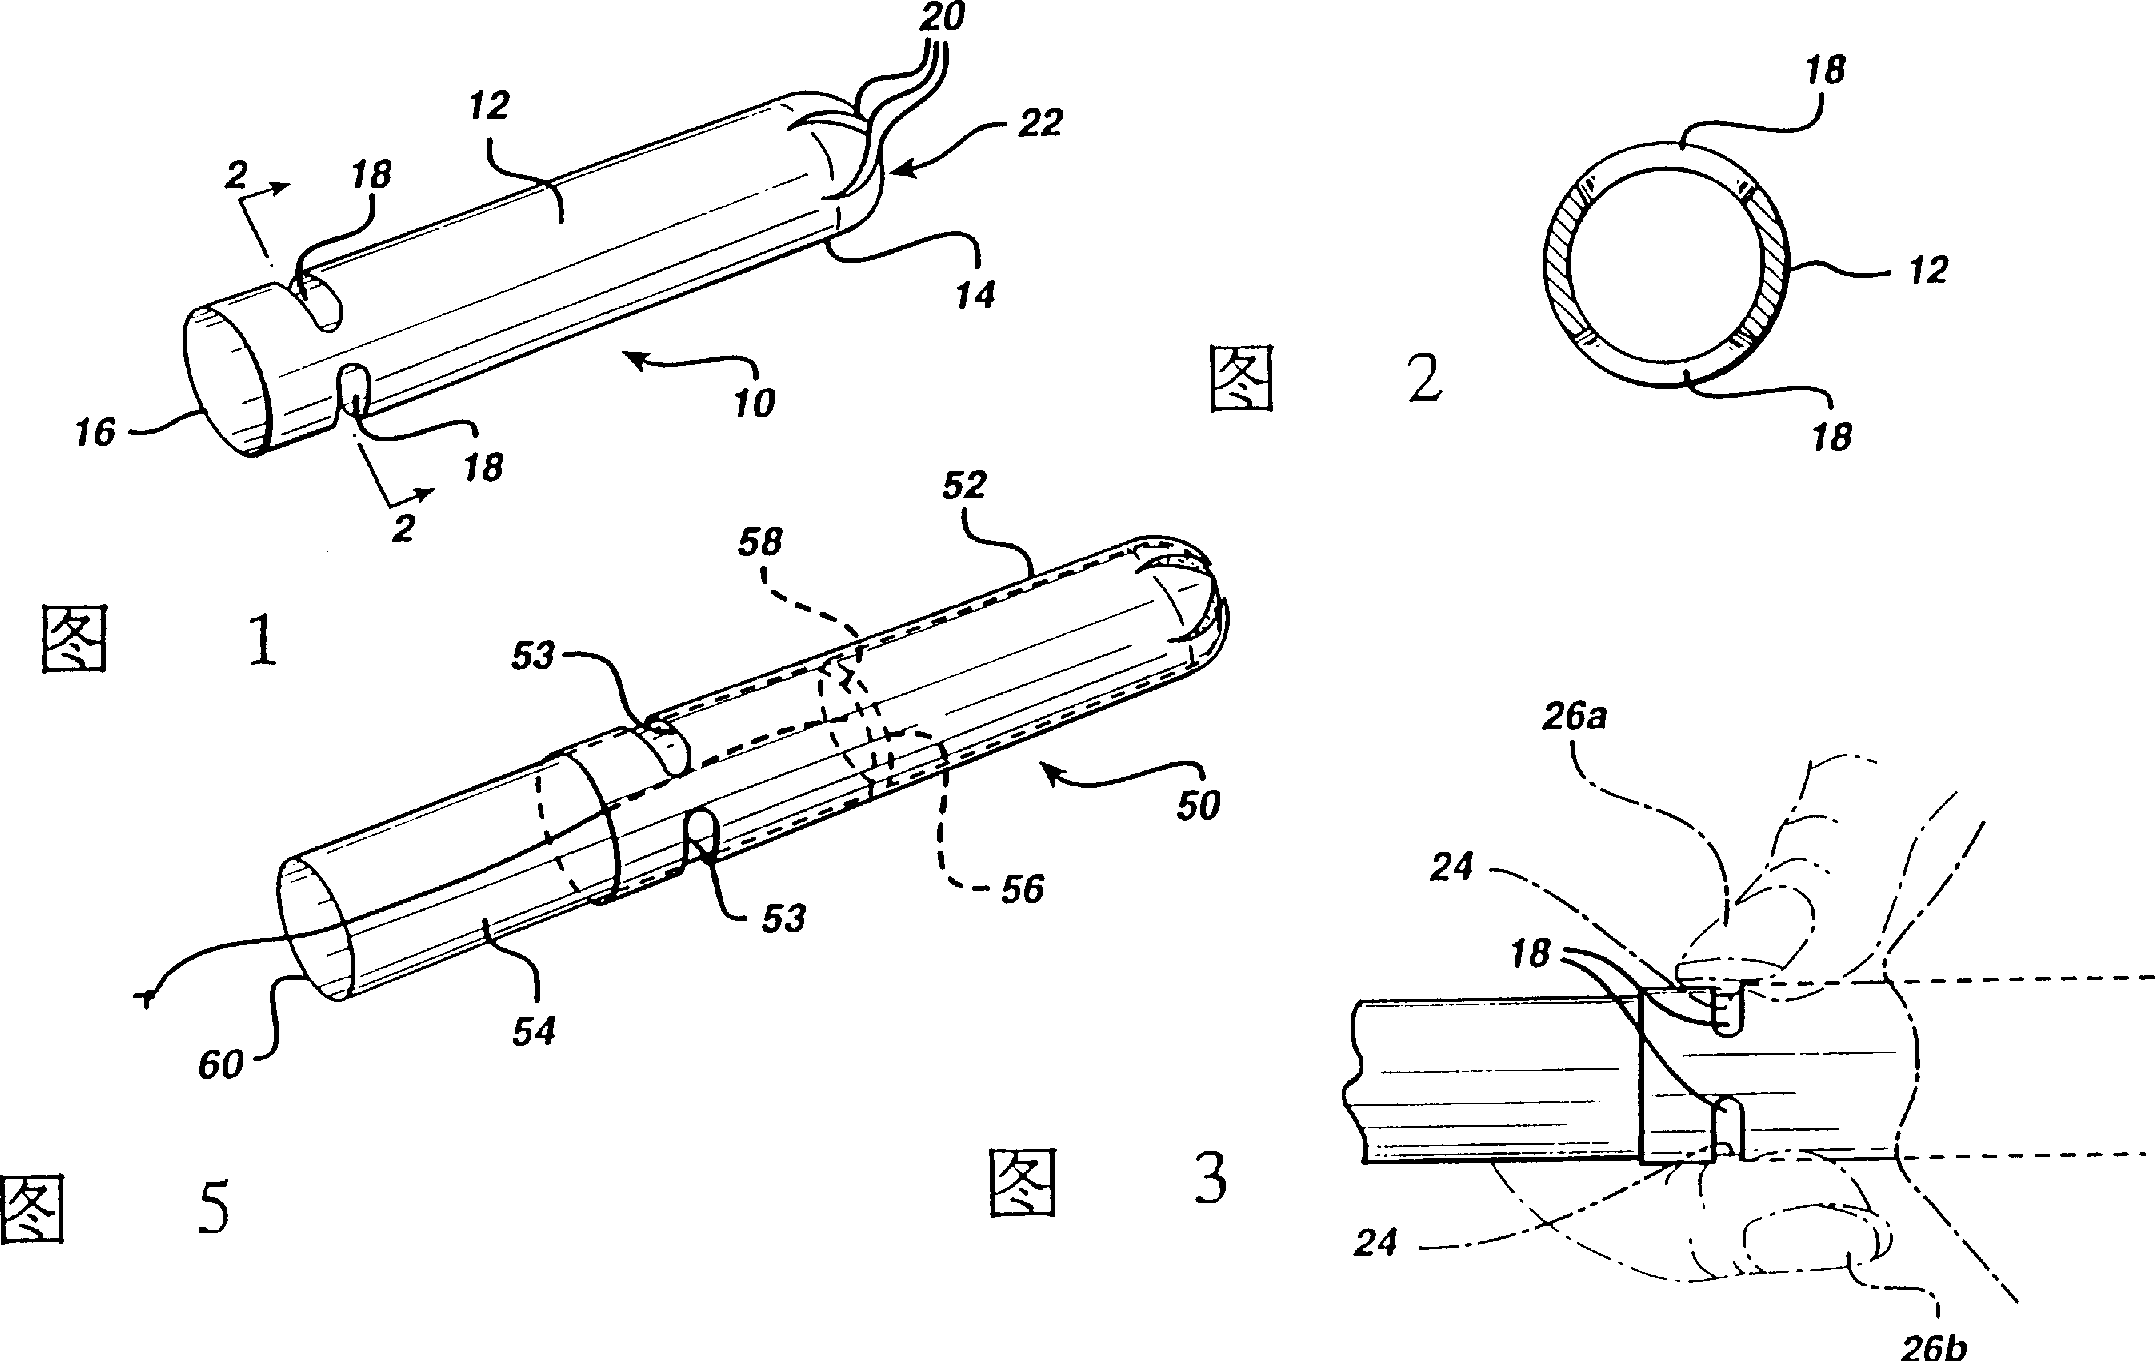 Tampon applicator tube having apertured finger grip